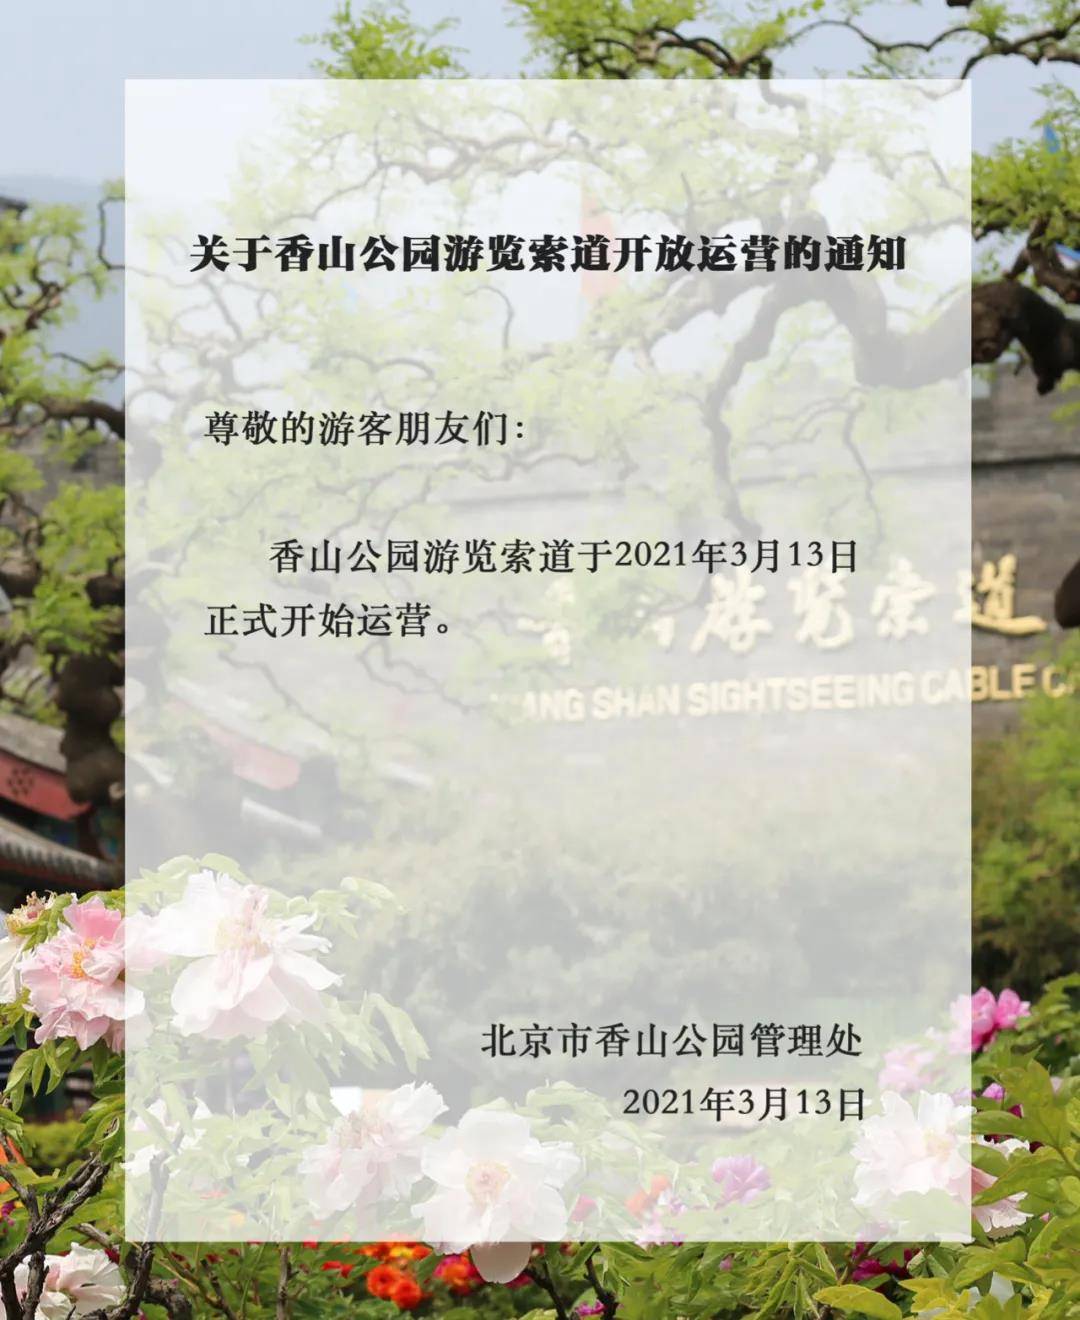 香山公园游览索道3月13日起开放运营